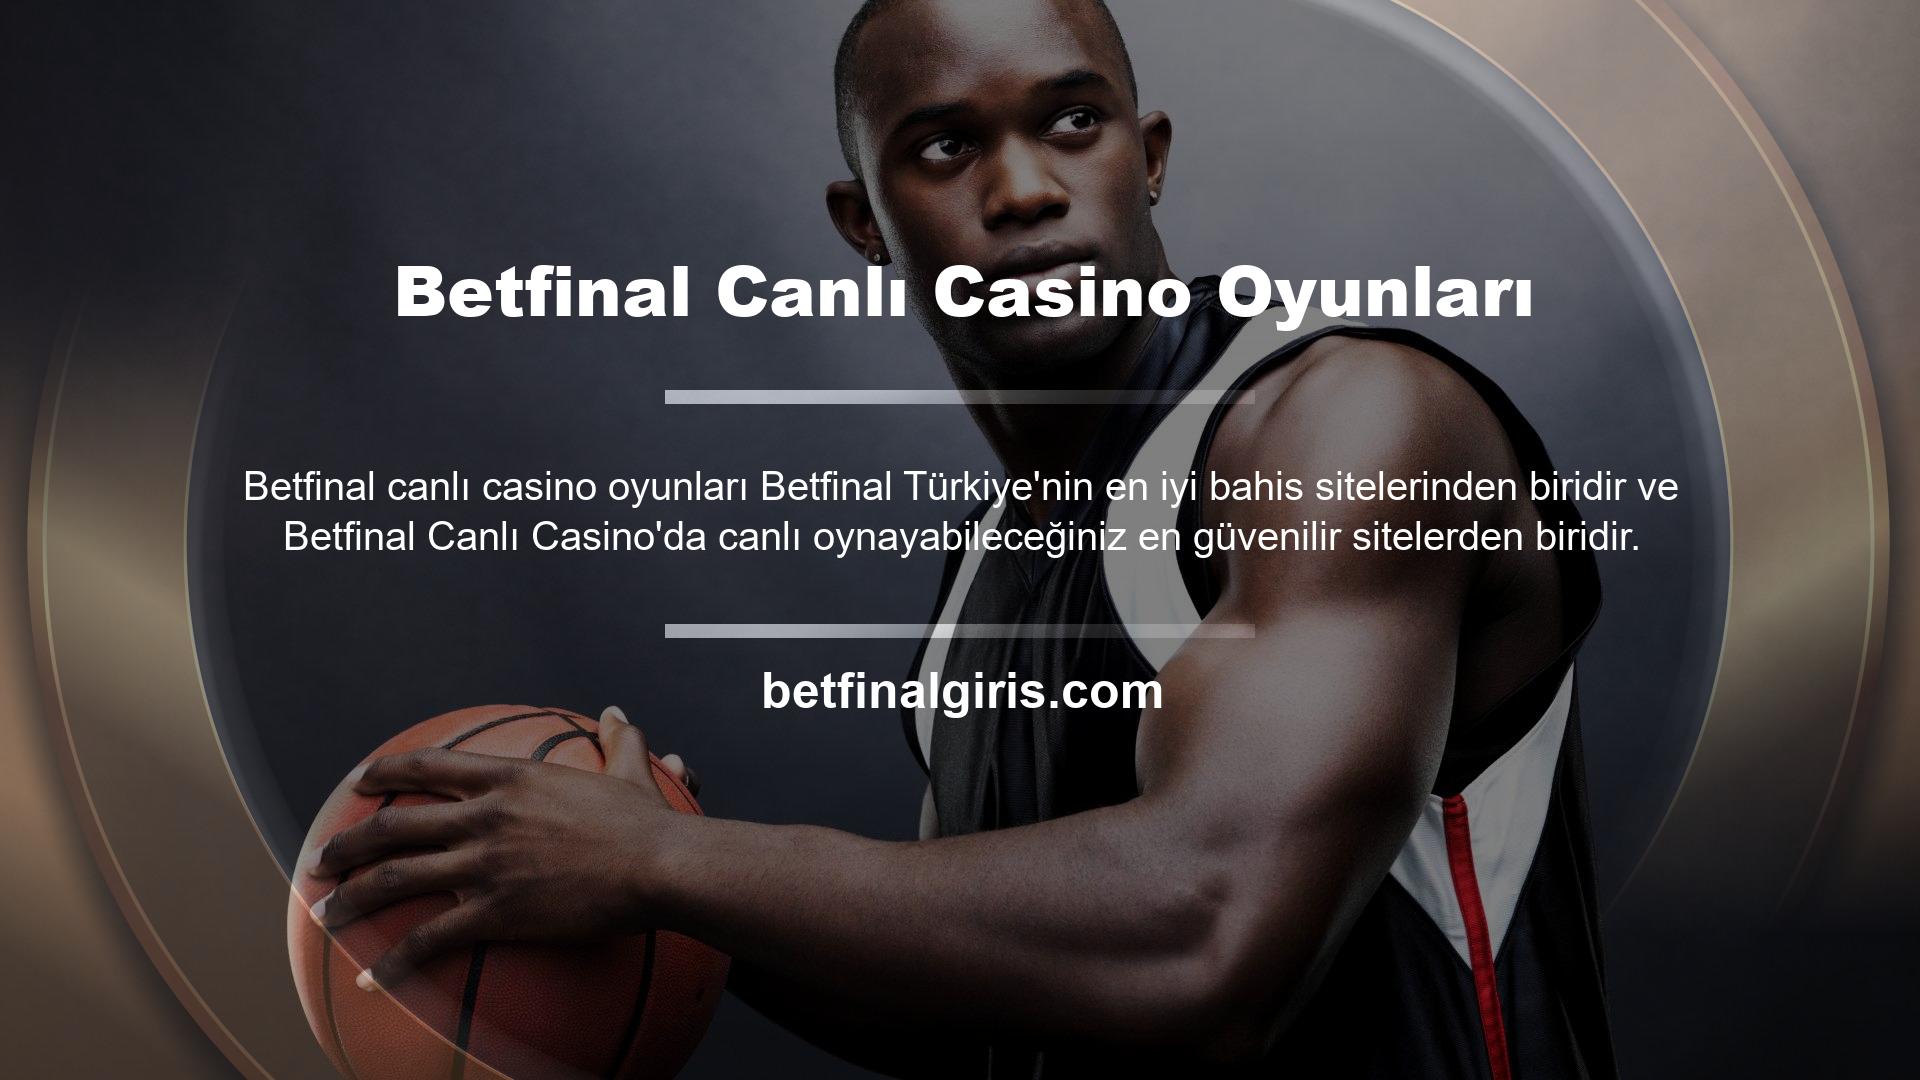 Canlı casino tutkunlarının mutlaka sahip olması gereken bir site, Betfinal giriş yaptığınızda menüden kullanıcı adınızı ve şifrenizi kullanarak canlı casino sayfasını açın ve Betfinal bulunan tüm oyunları görün